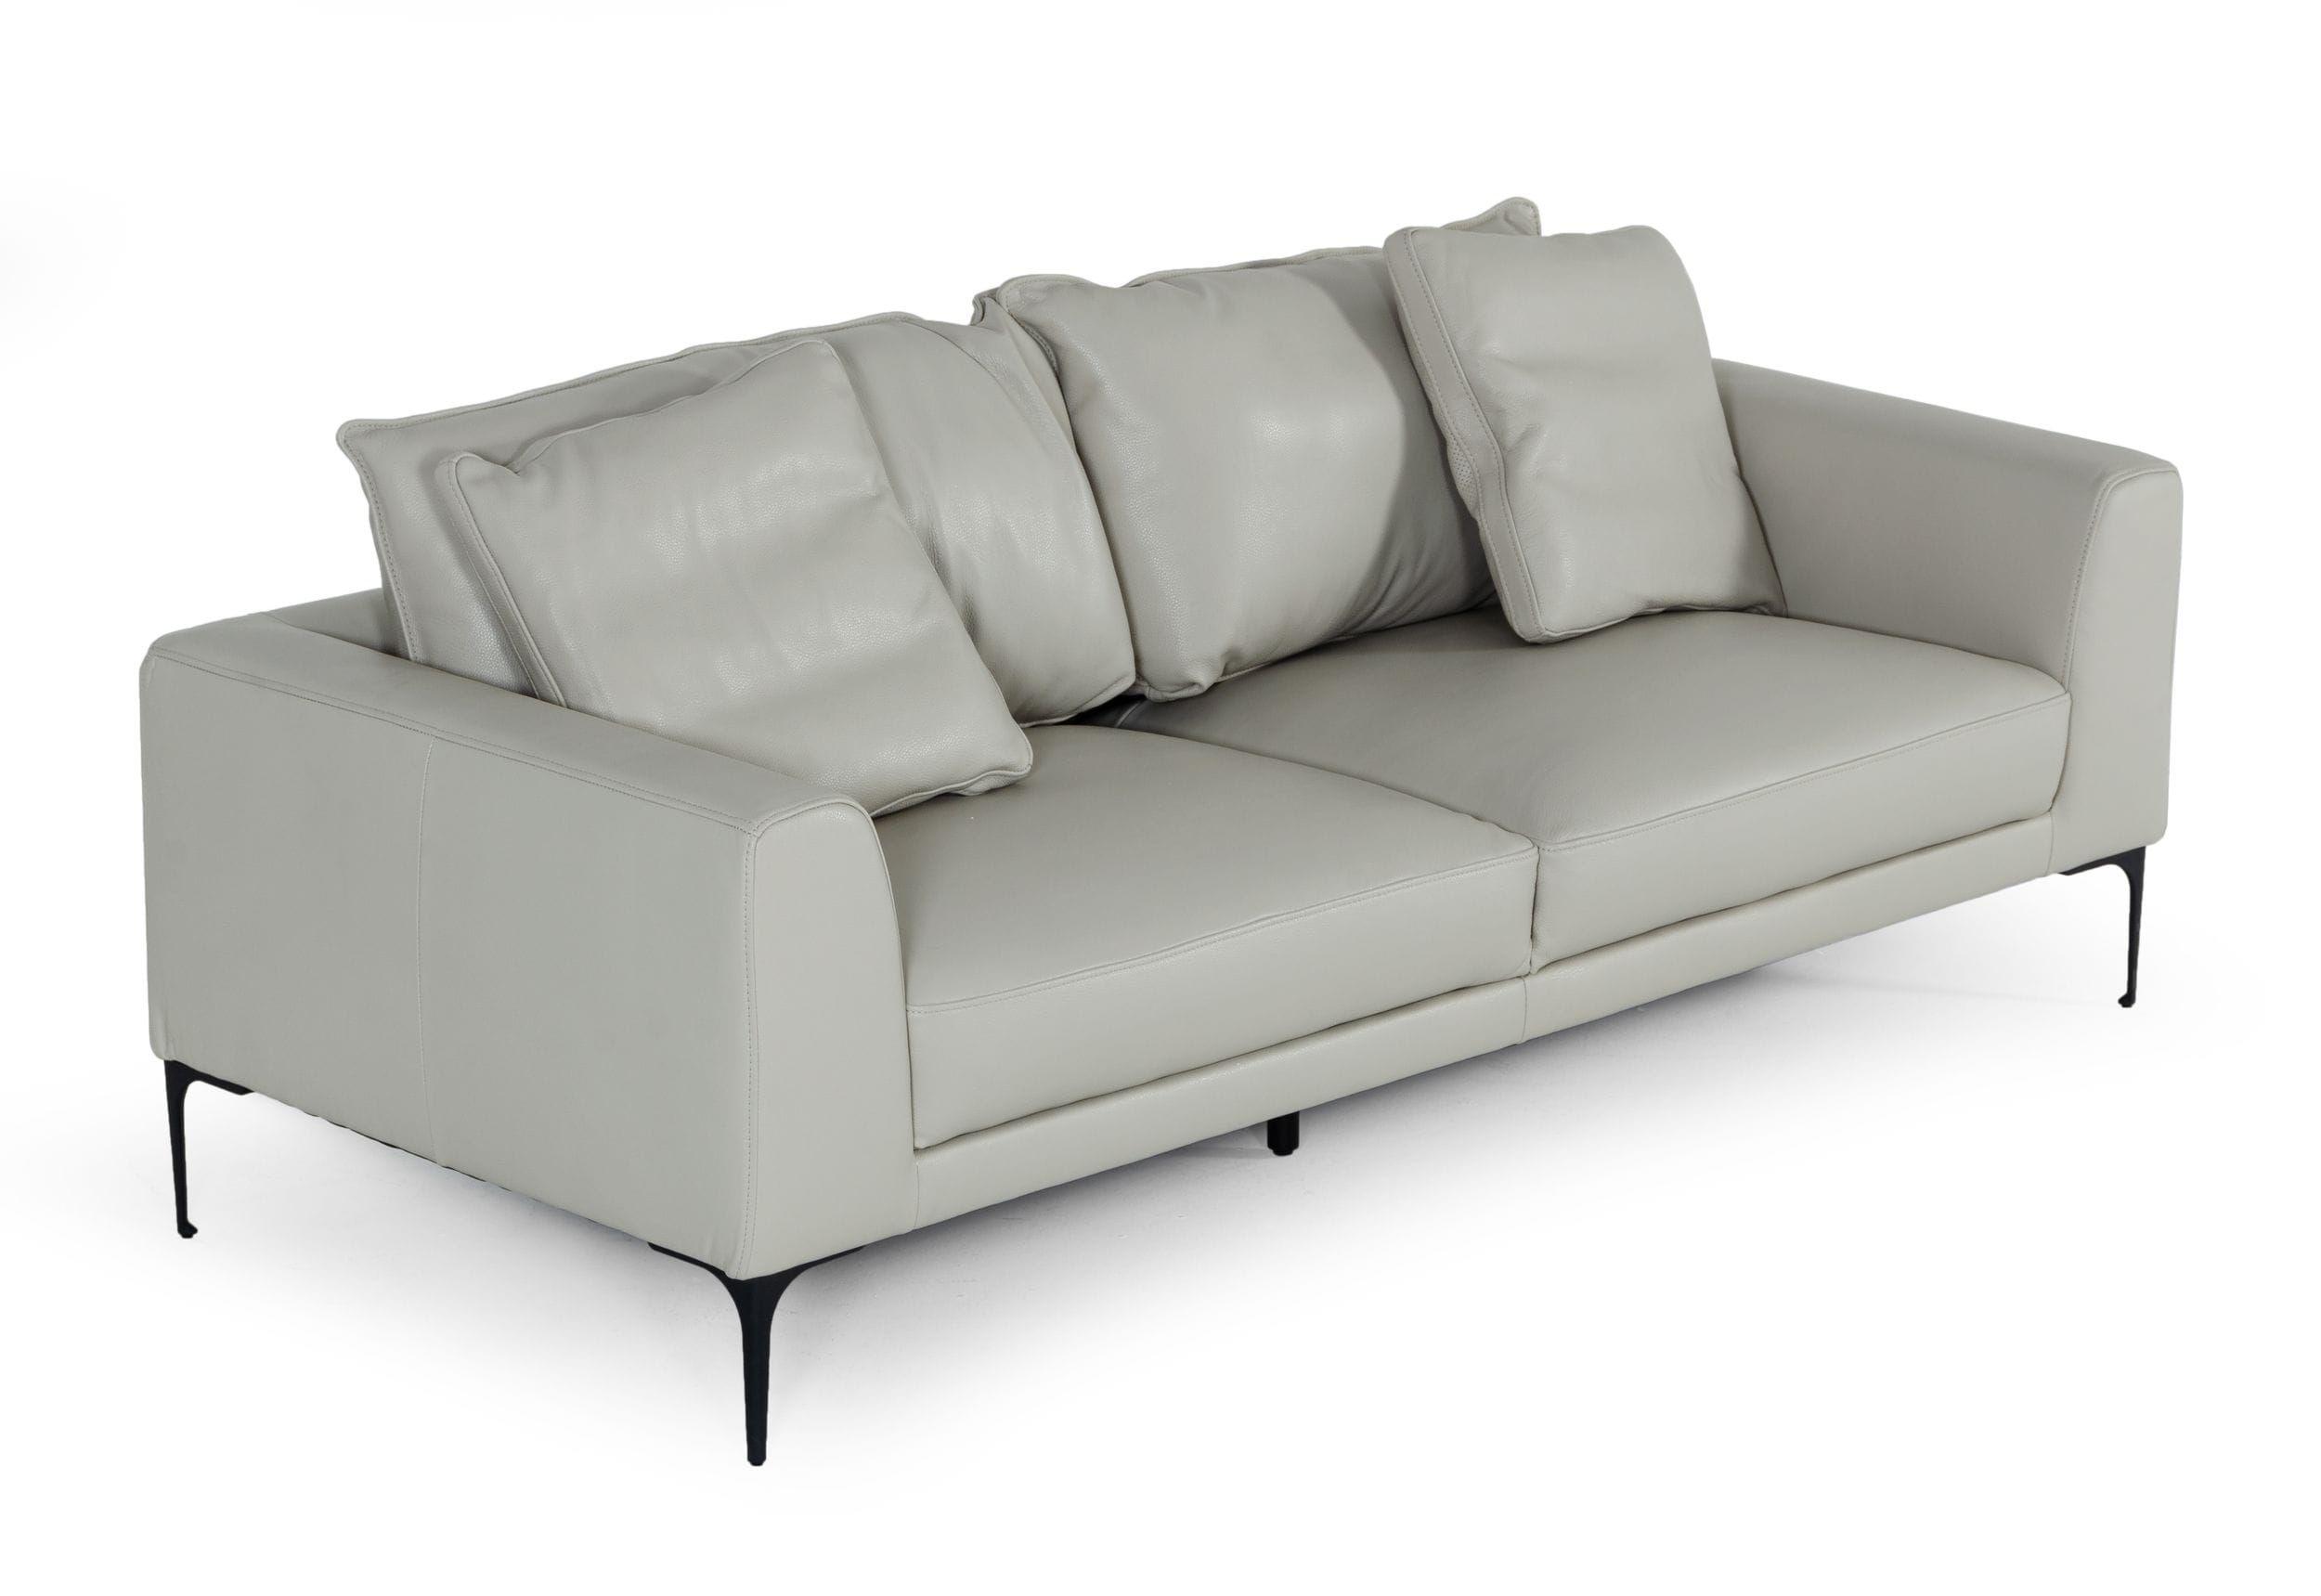 Modern Sofa VGKKKF2620-GRY-3 VGKKKF2620-GRY-3 in Light Gray Leather